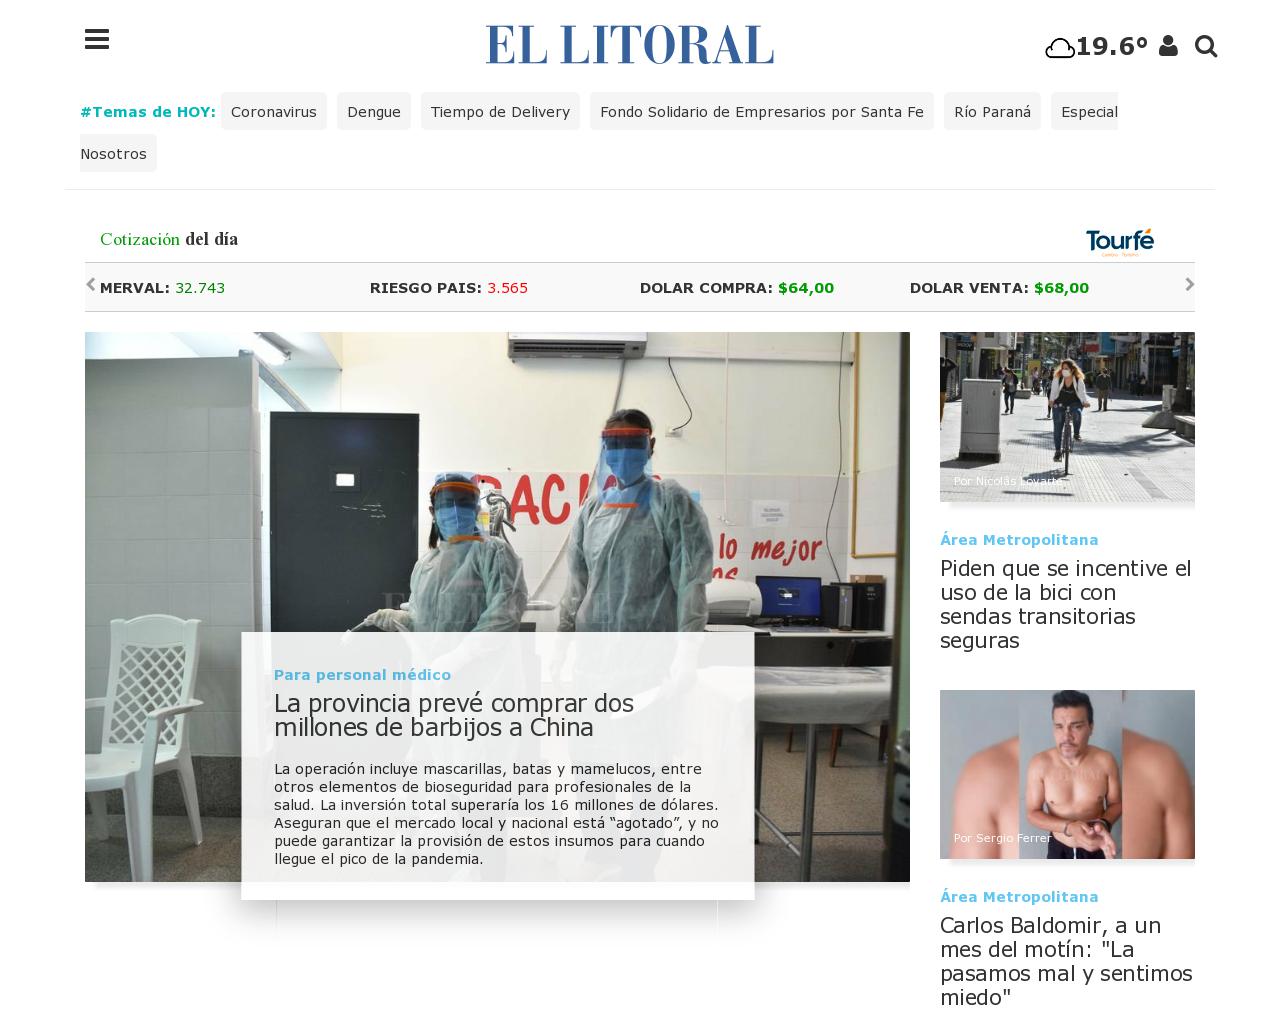 ellitoral.com